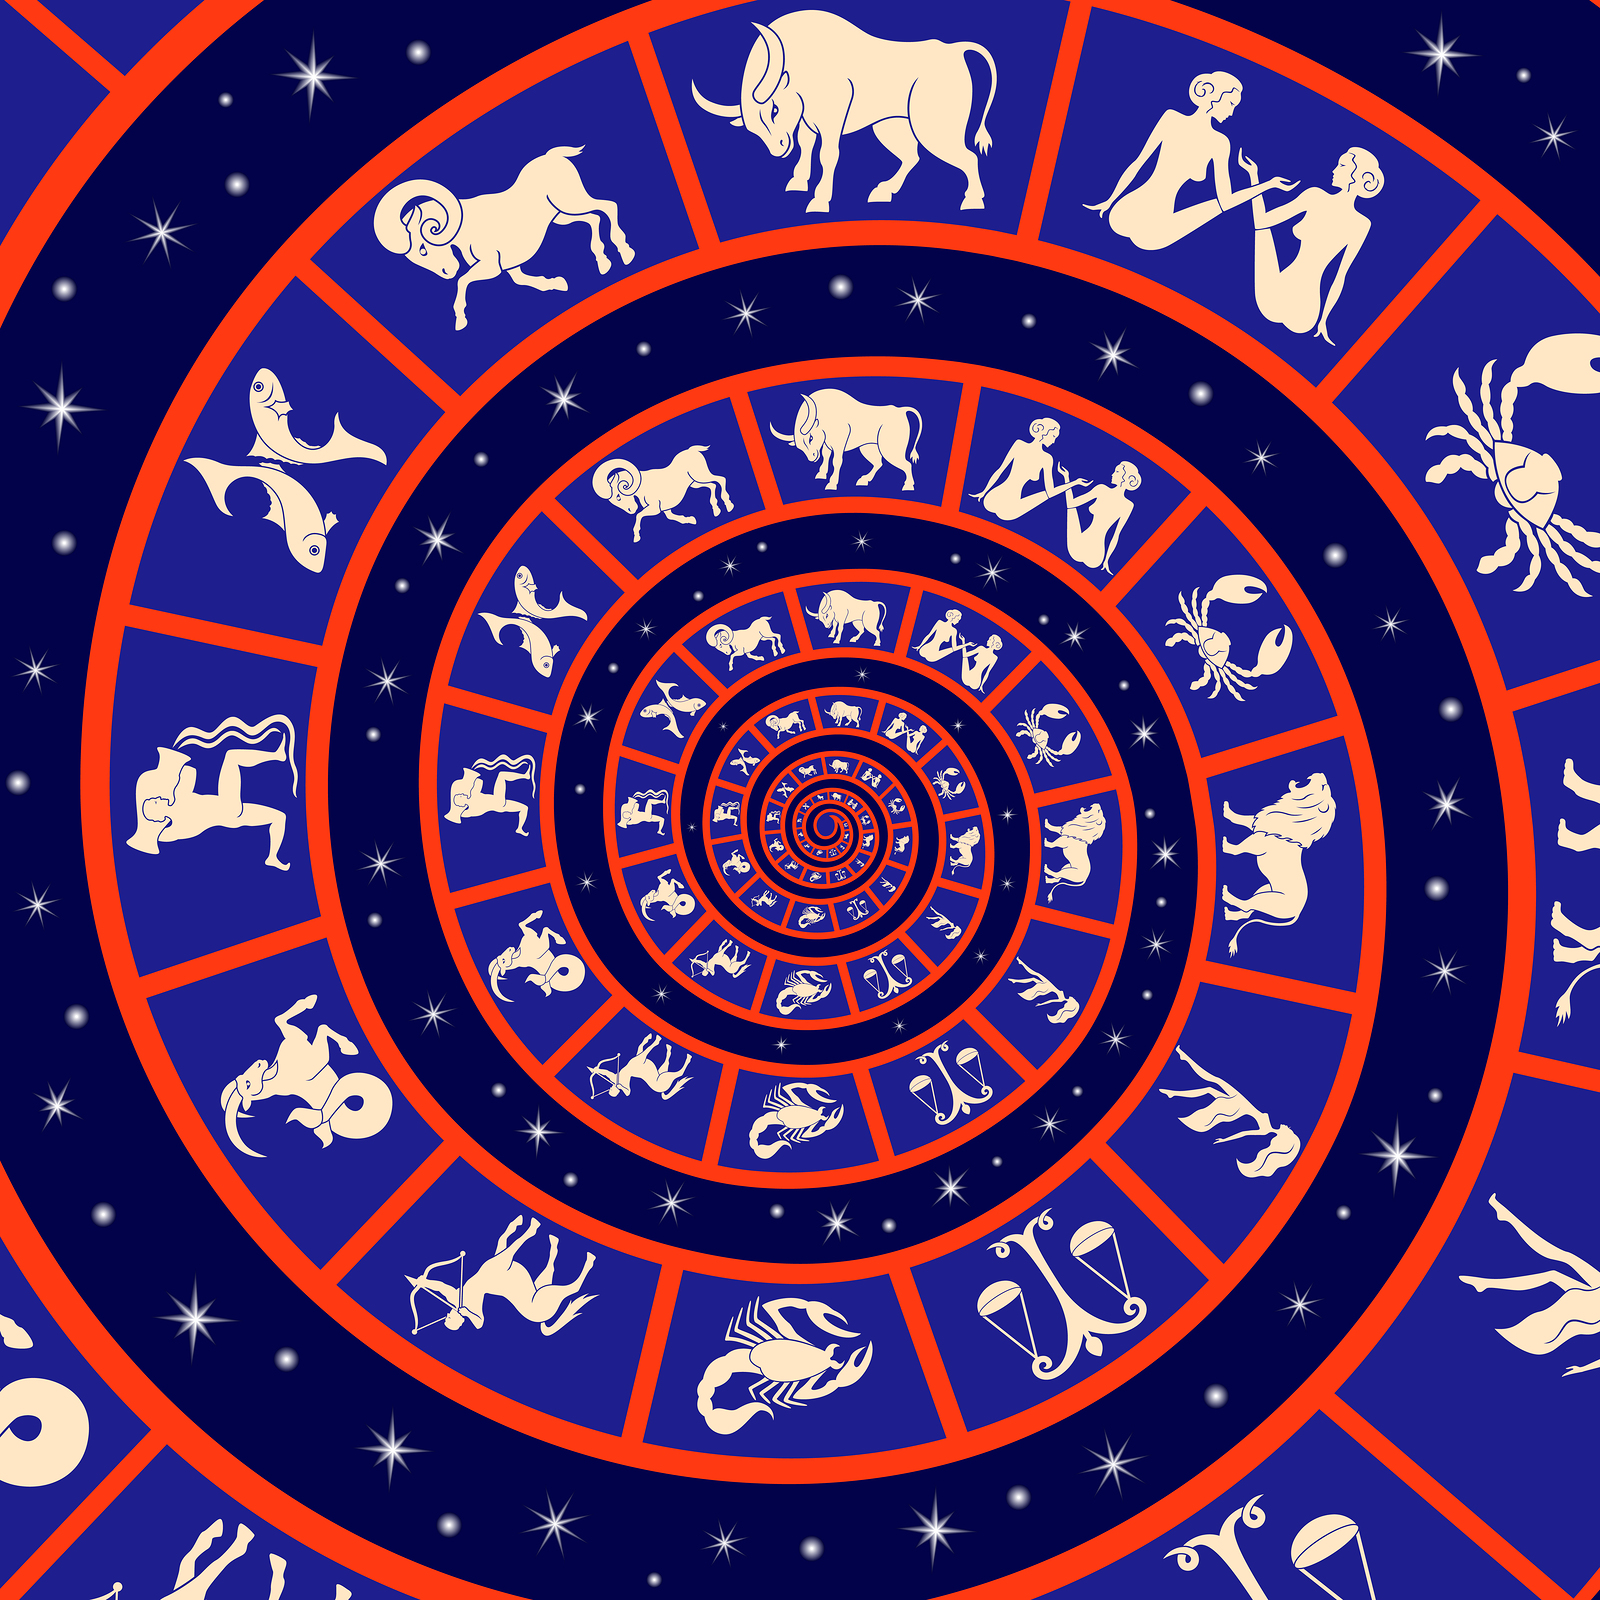 Horoskopy majú dlhú históriu: Prvý patril synovi babylonského panovníka